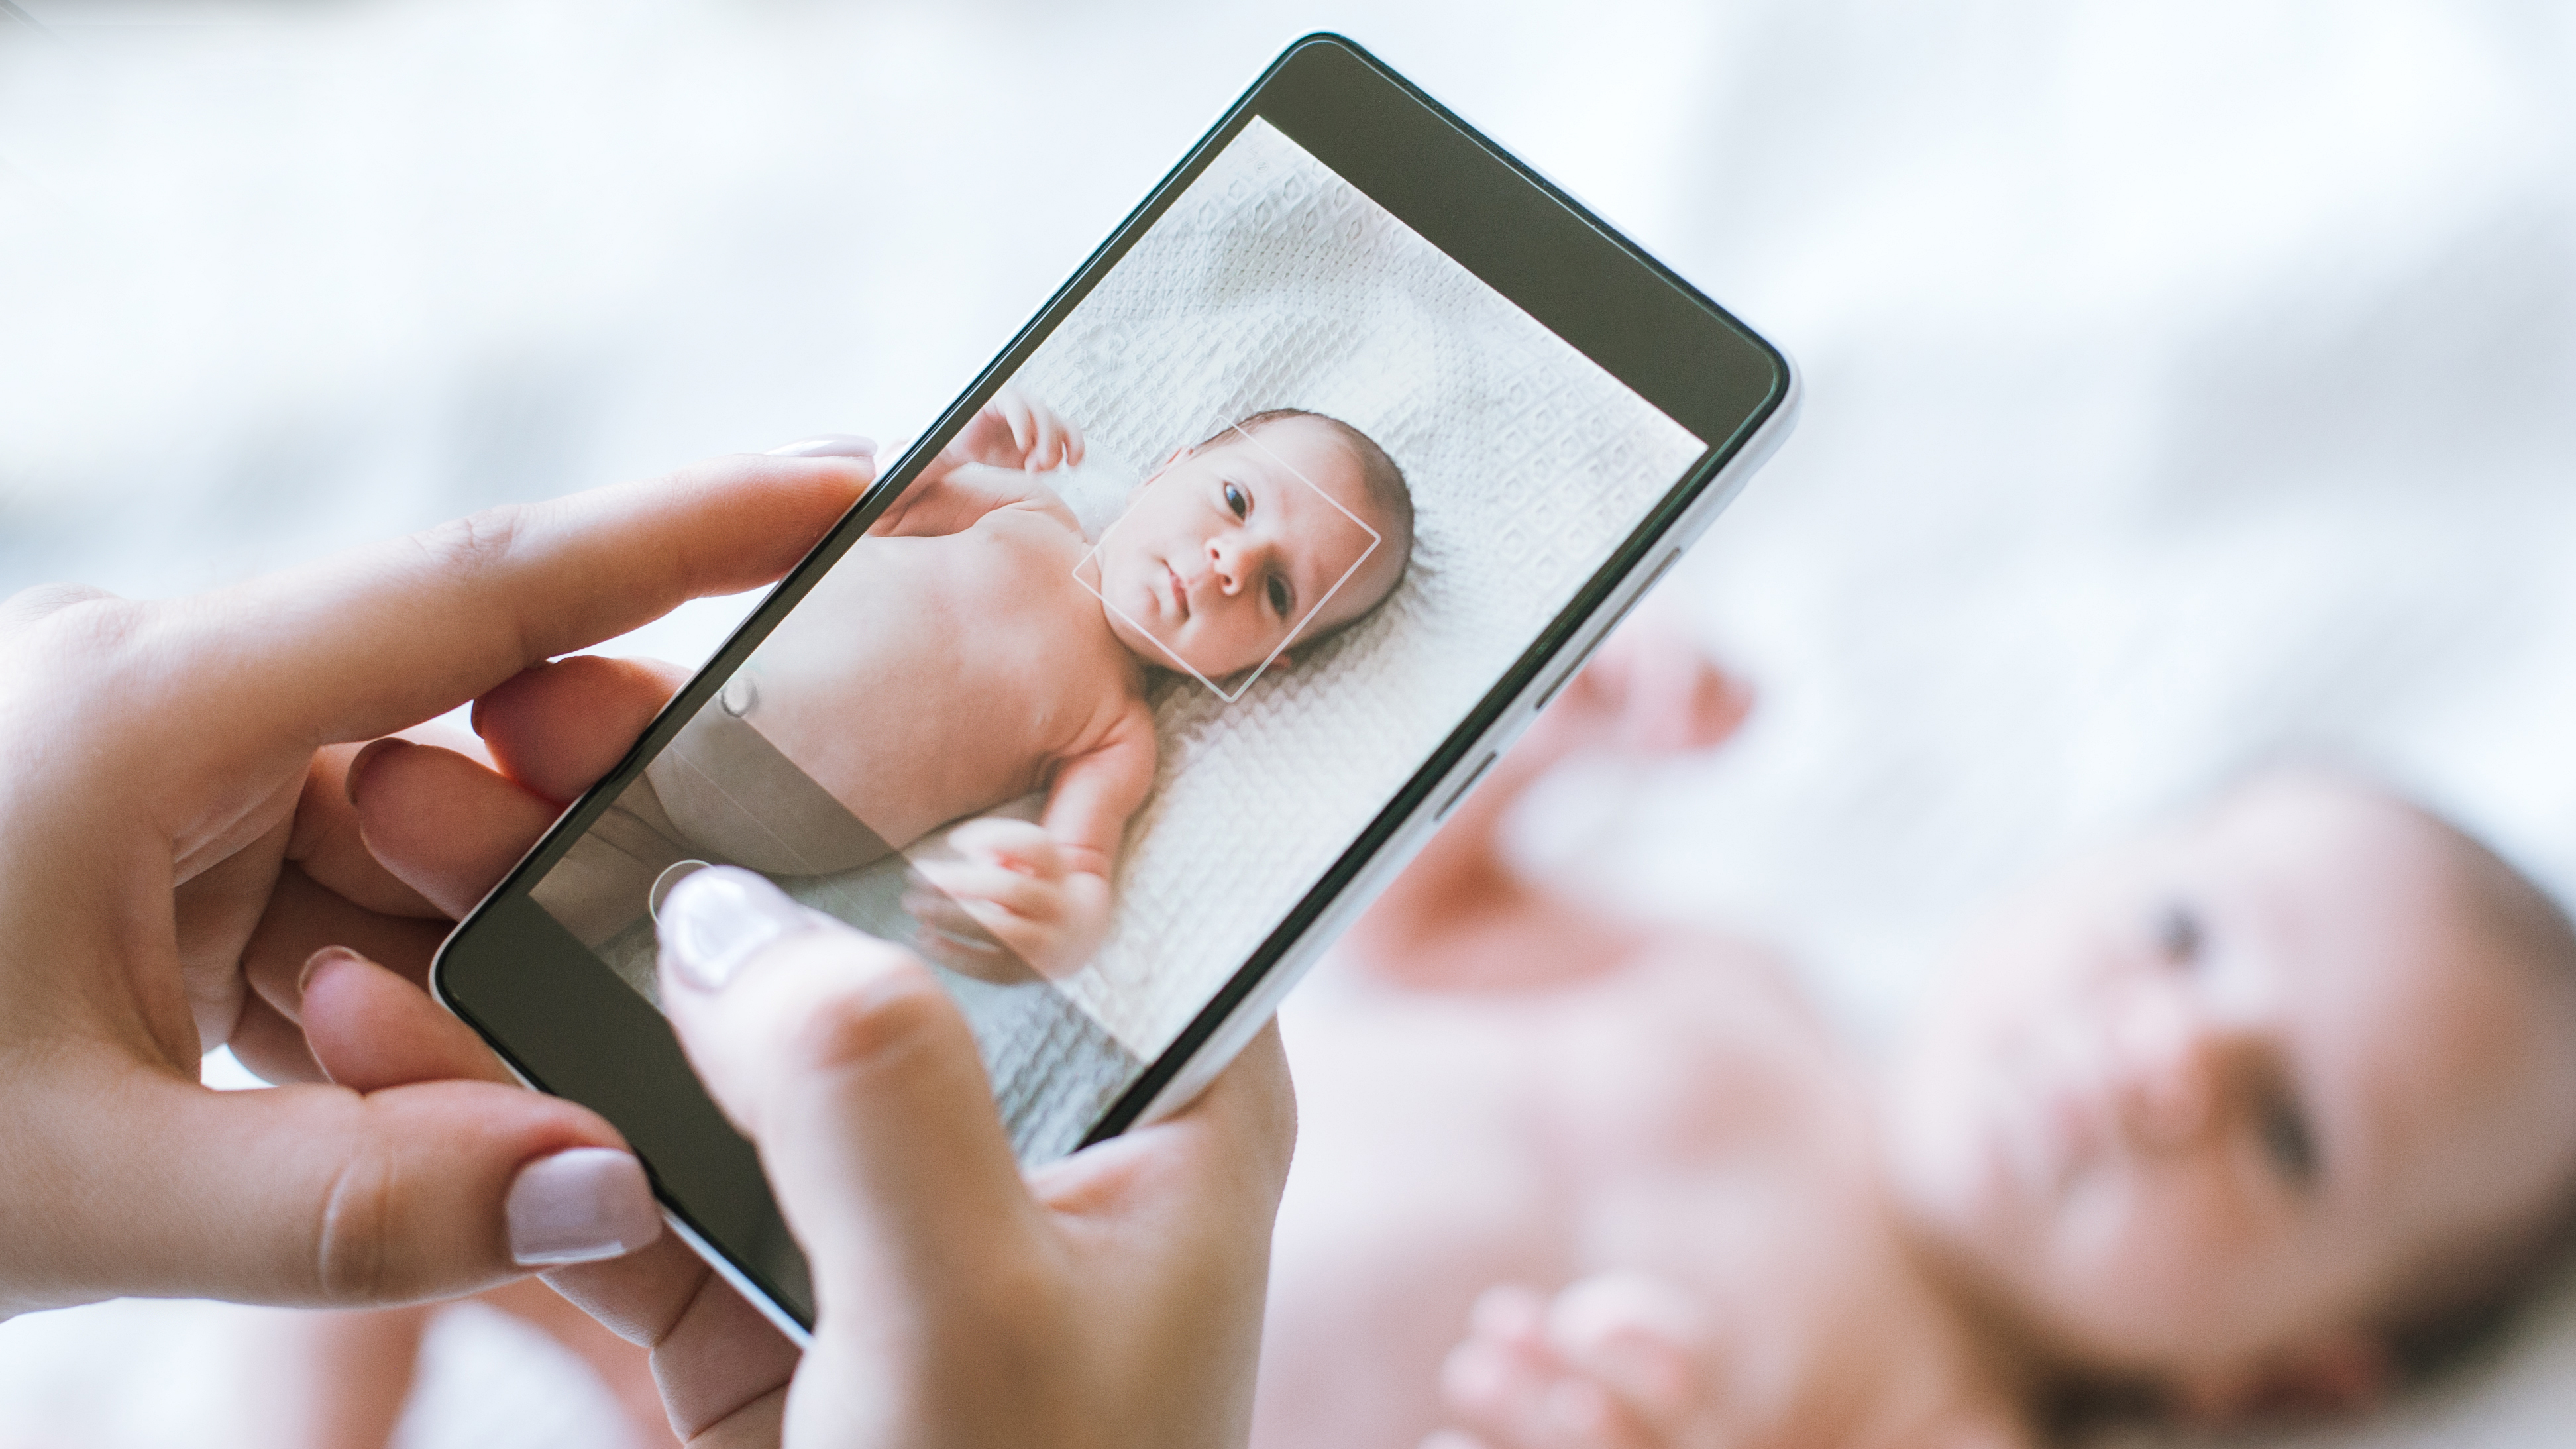 младенец и телефон, влияние смартфона на ребенка, польза или вред, как экран телефона влияет на восприятие мамы малышом